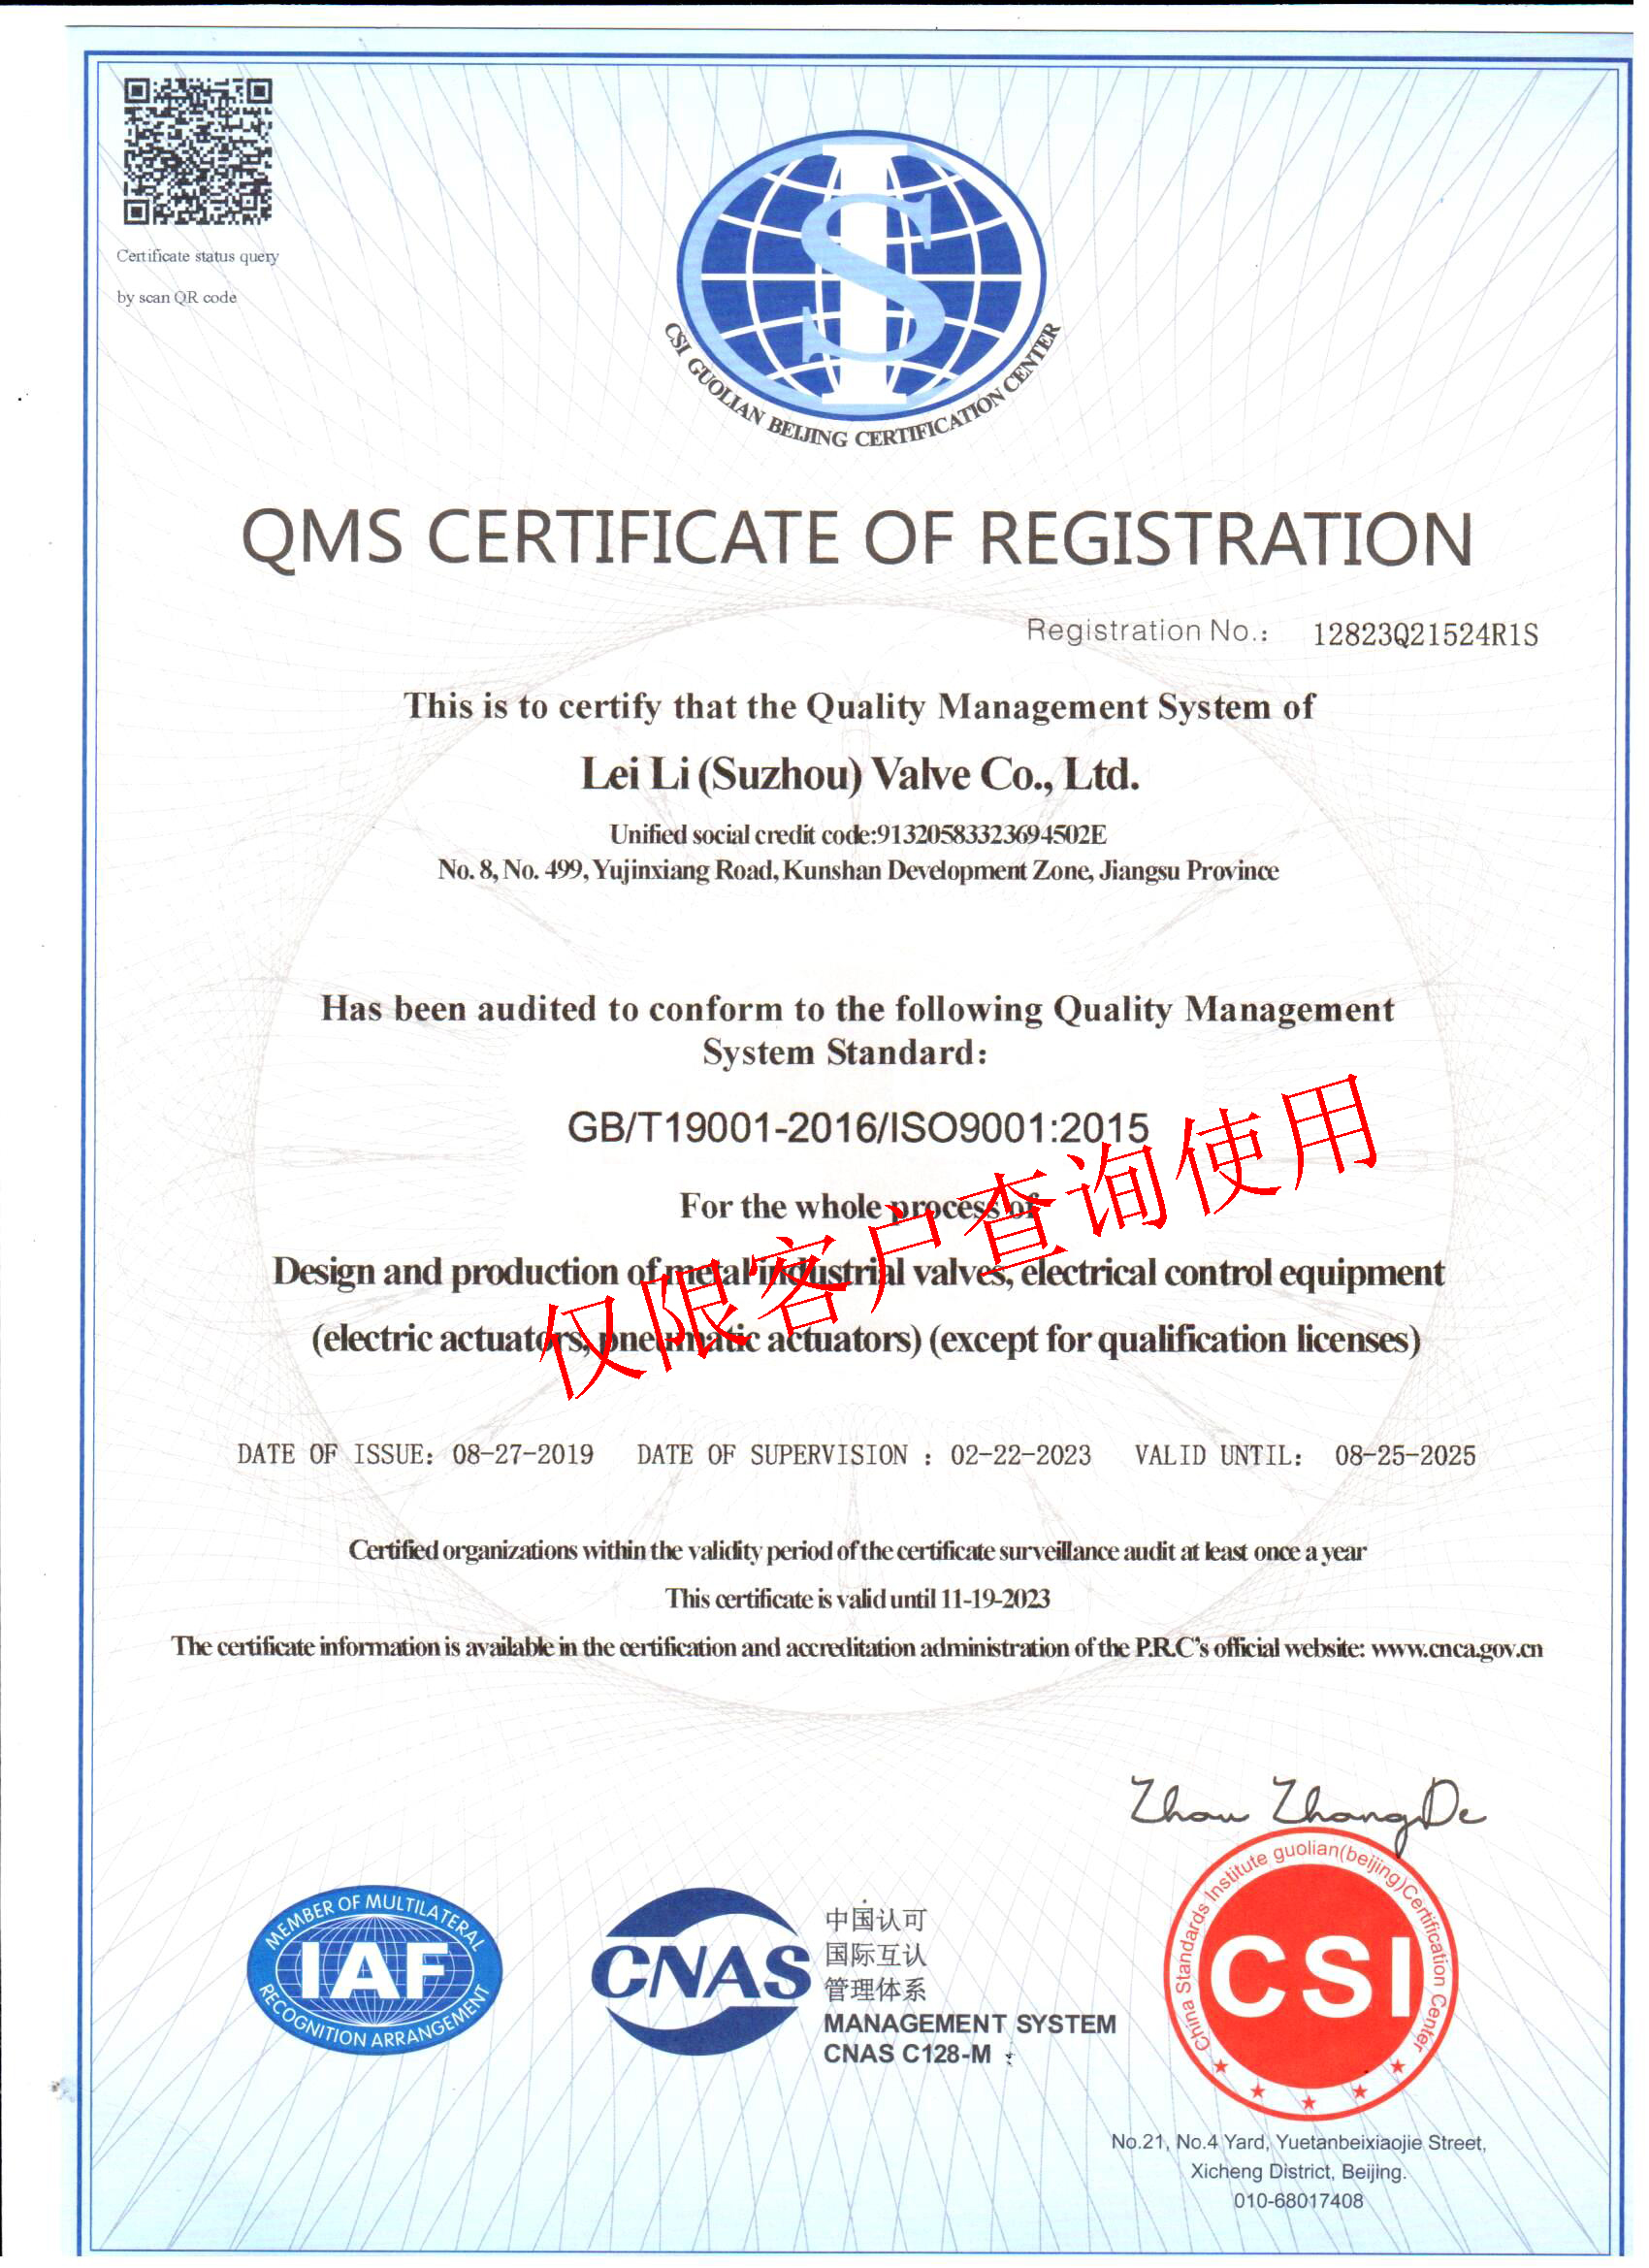 苏州雷力-ISO9001质量管理体系认证-英文.jpg